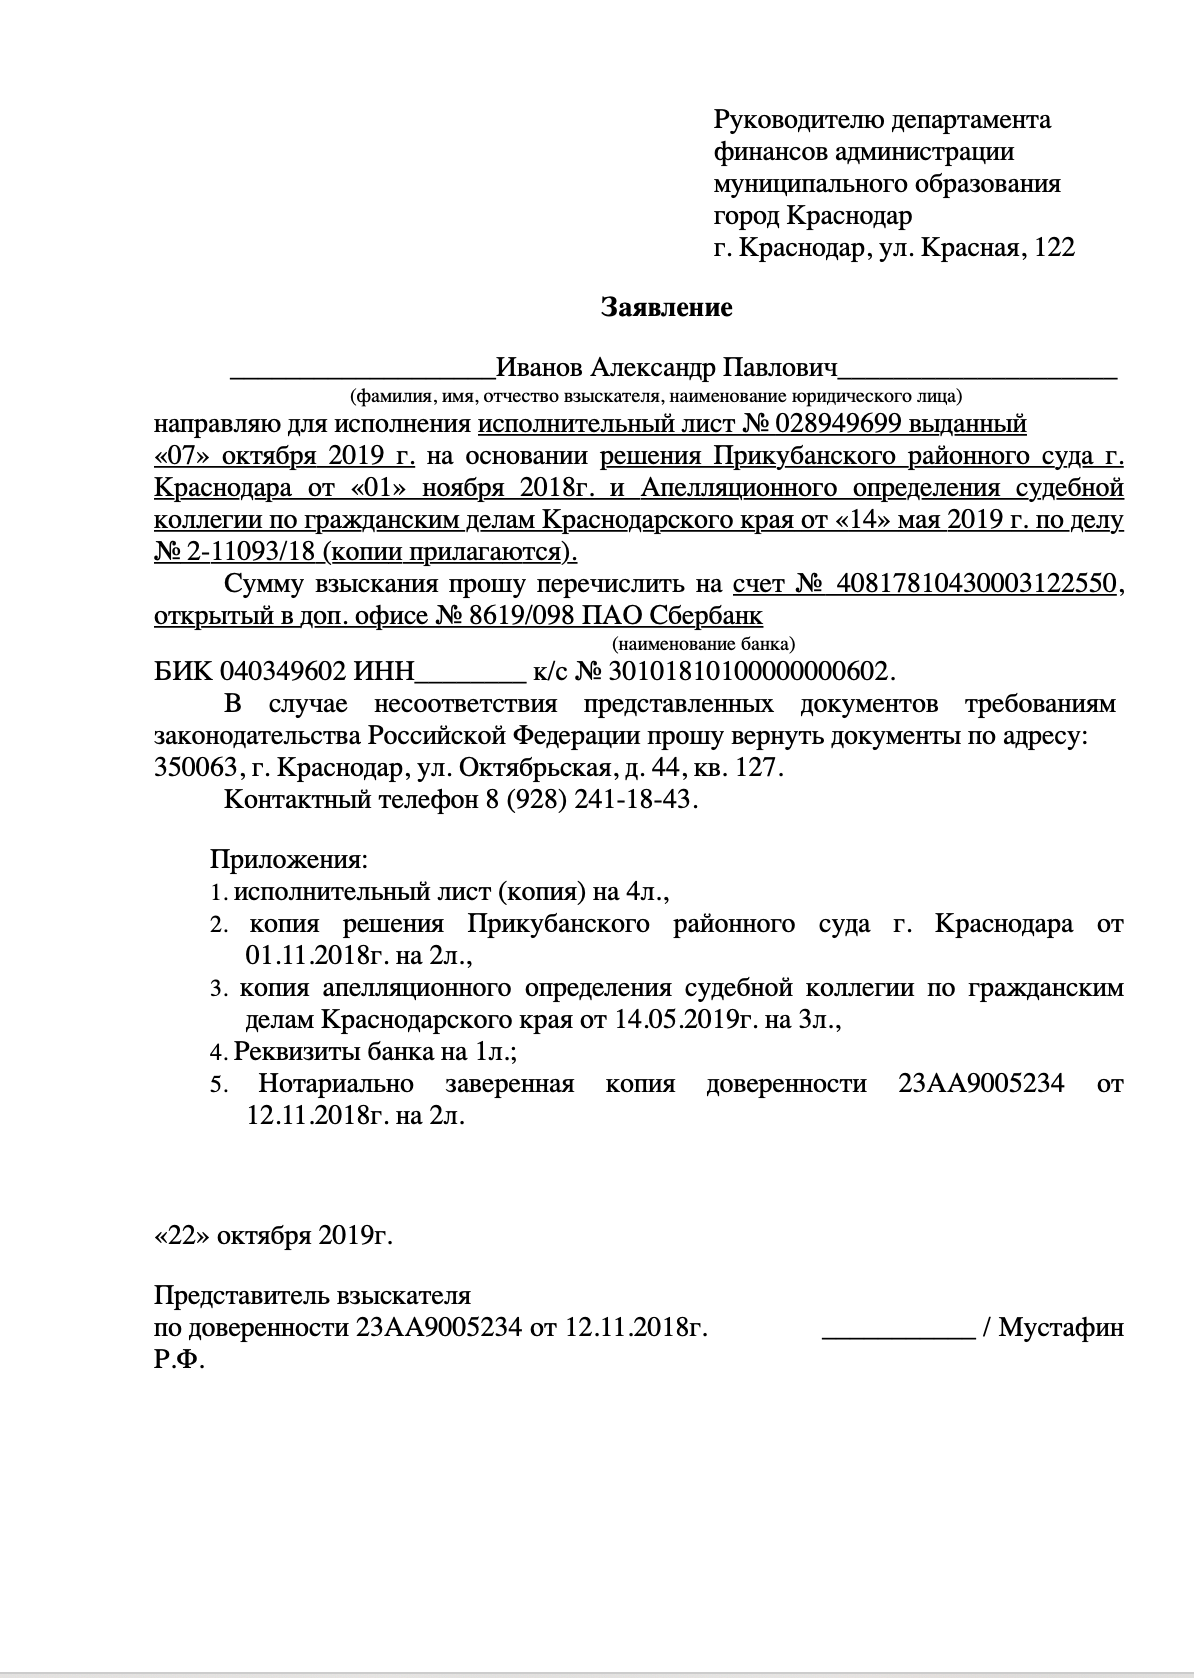 Заявление в администрацию Краснодара - исполнительный лист